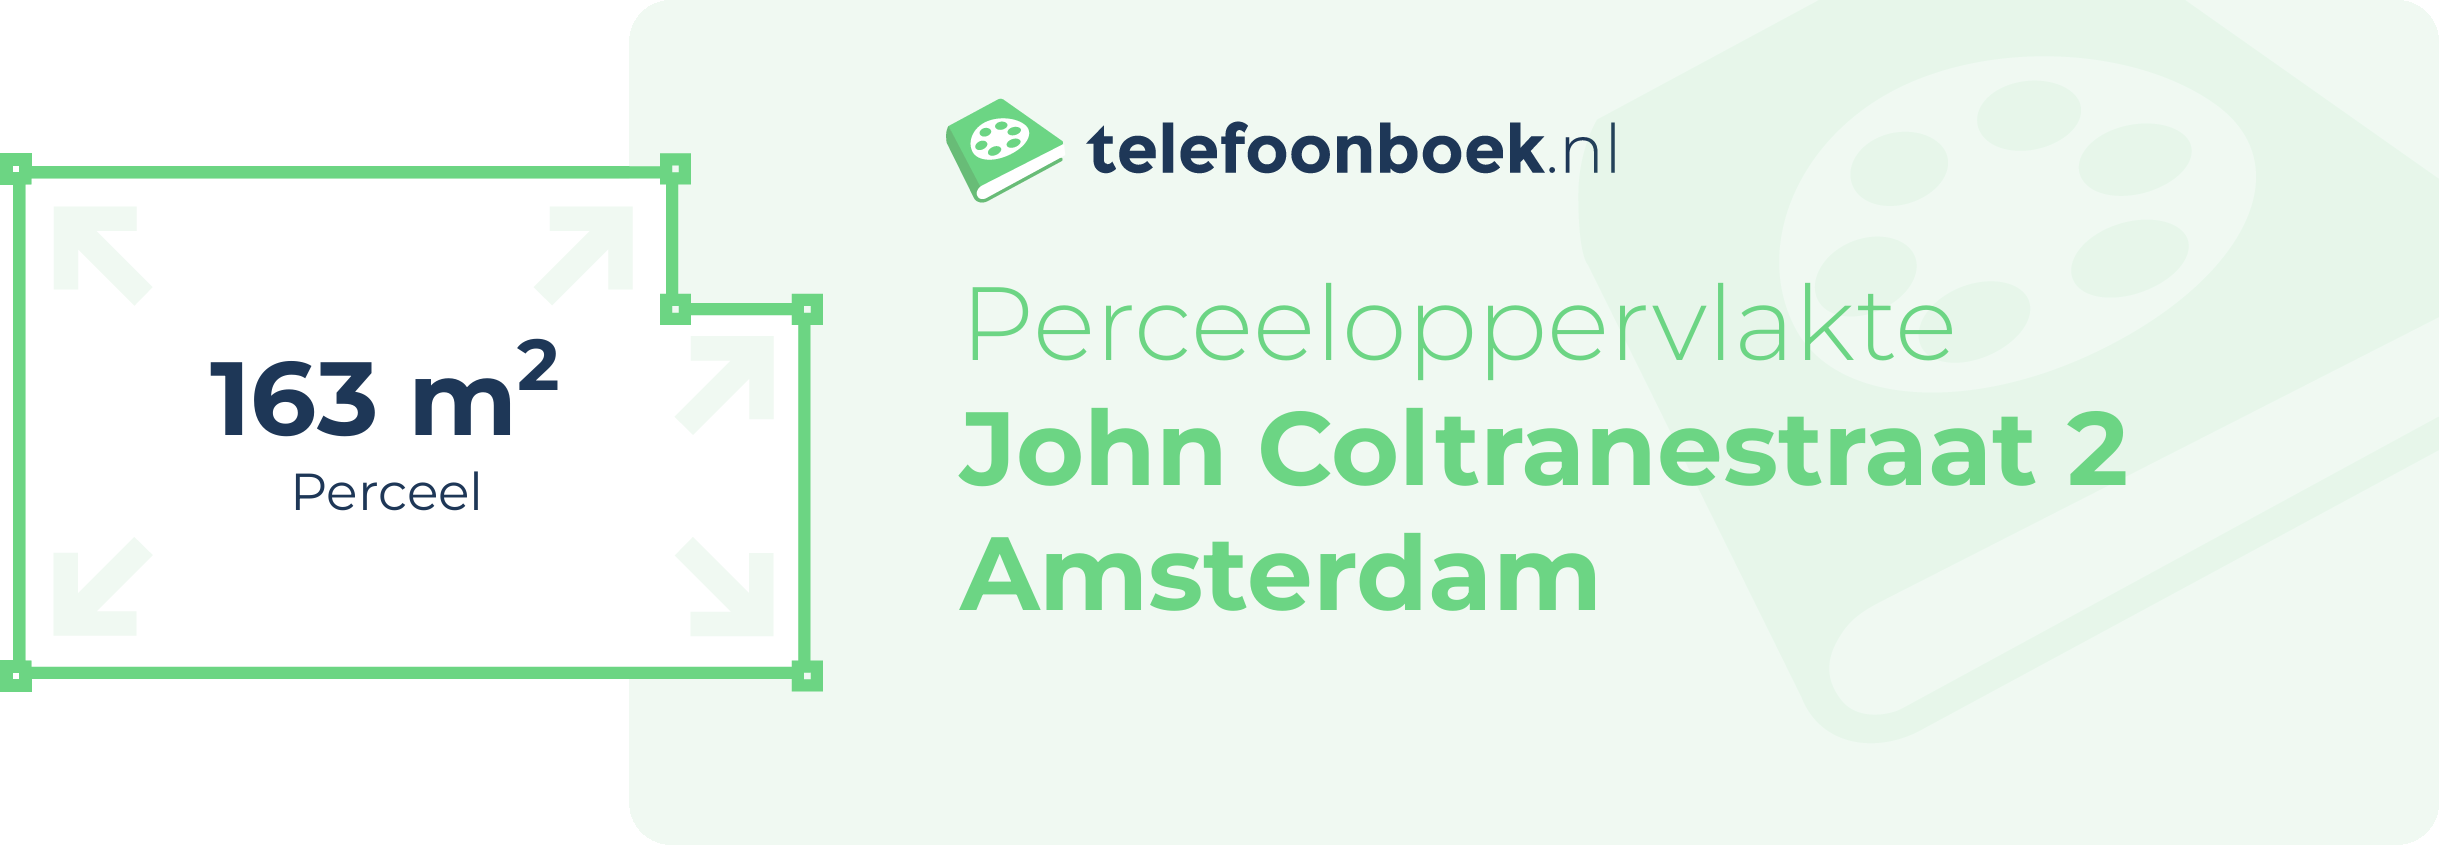 Perceeloppervlakte John Coltranestraat 2 Amsterdam